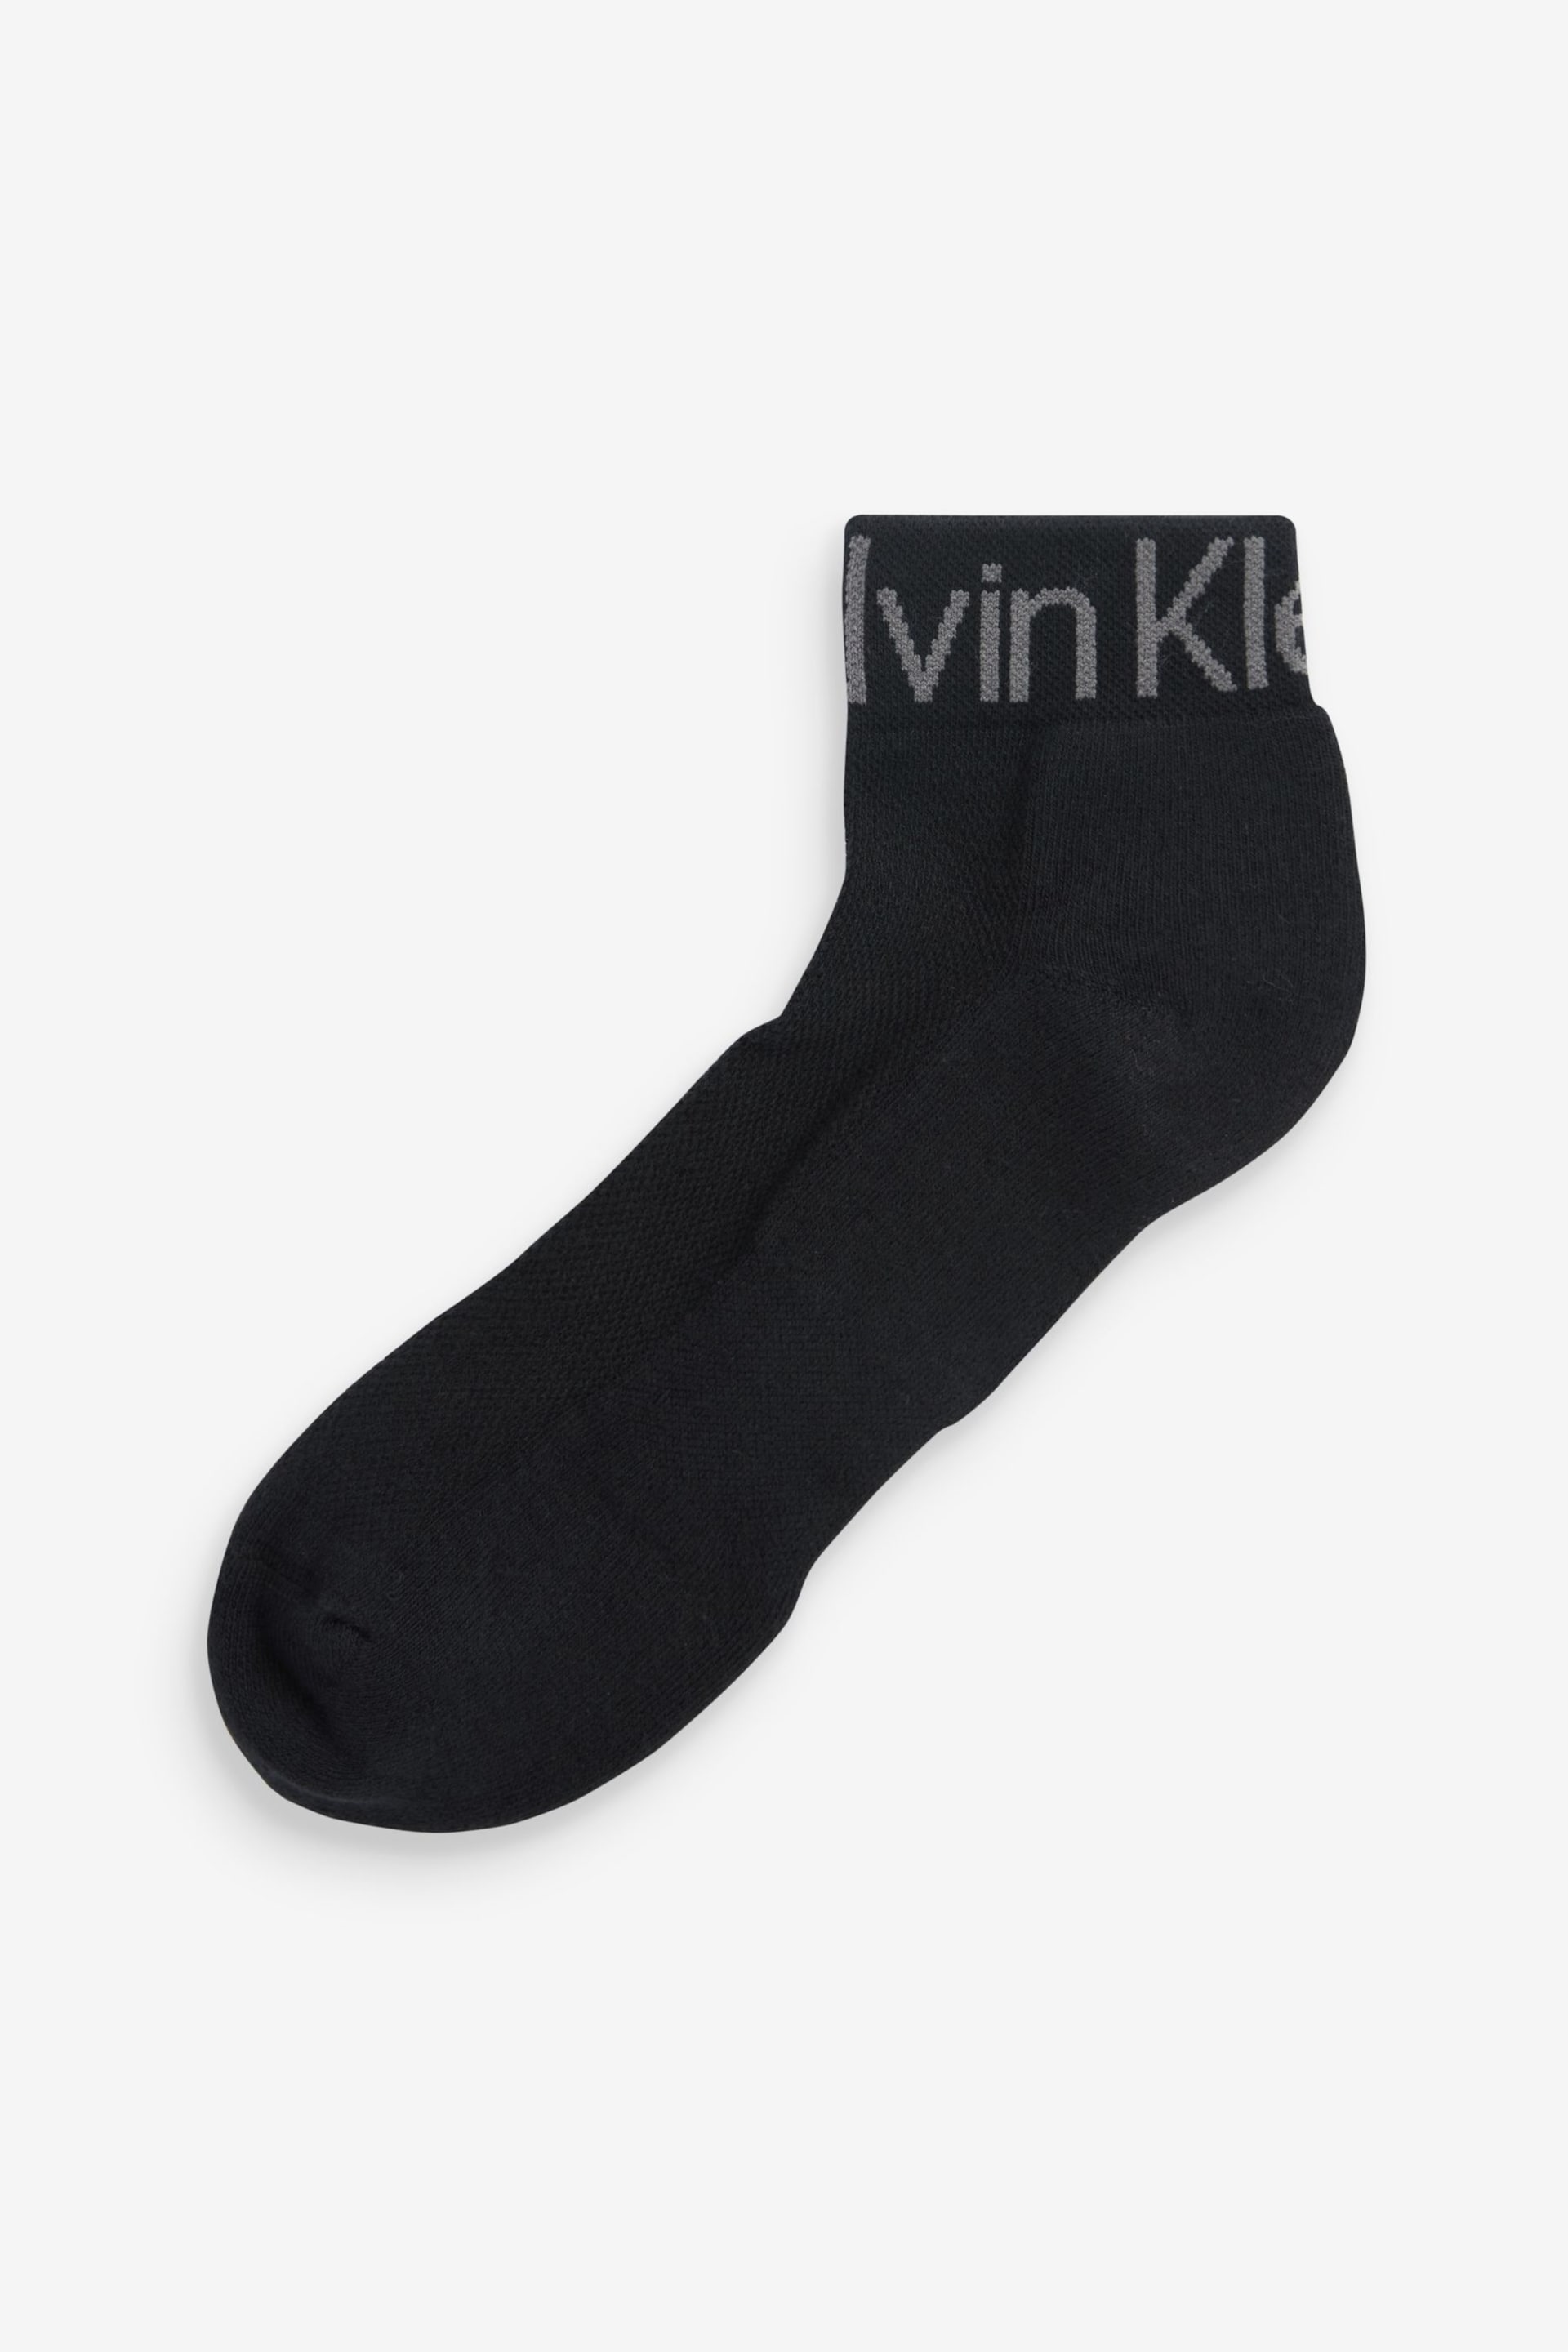 Calvin Klein Black Logo Quarter Socks 3 Pack - Image 2 of 5